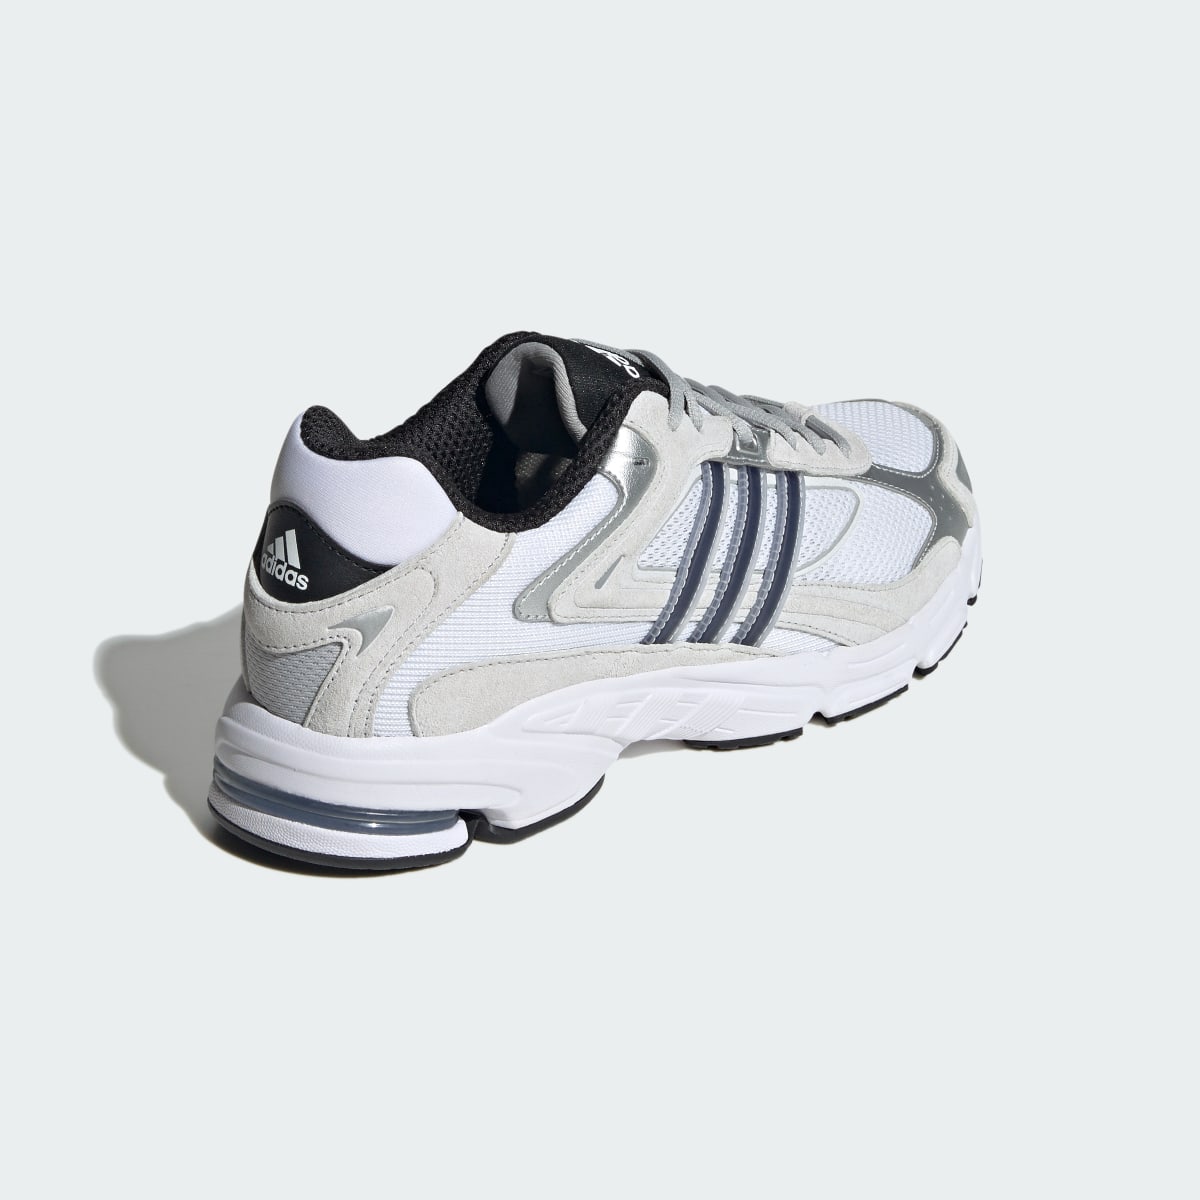 Adidas Response CL Schuh. 6